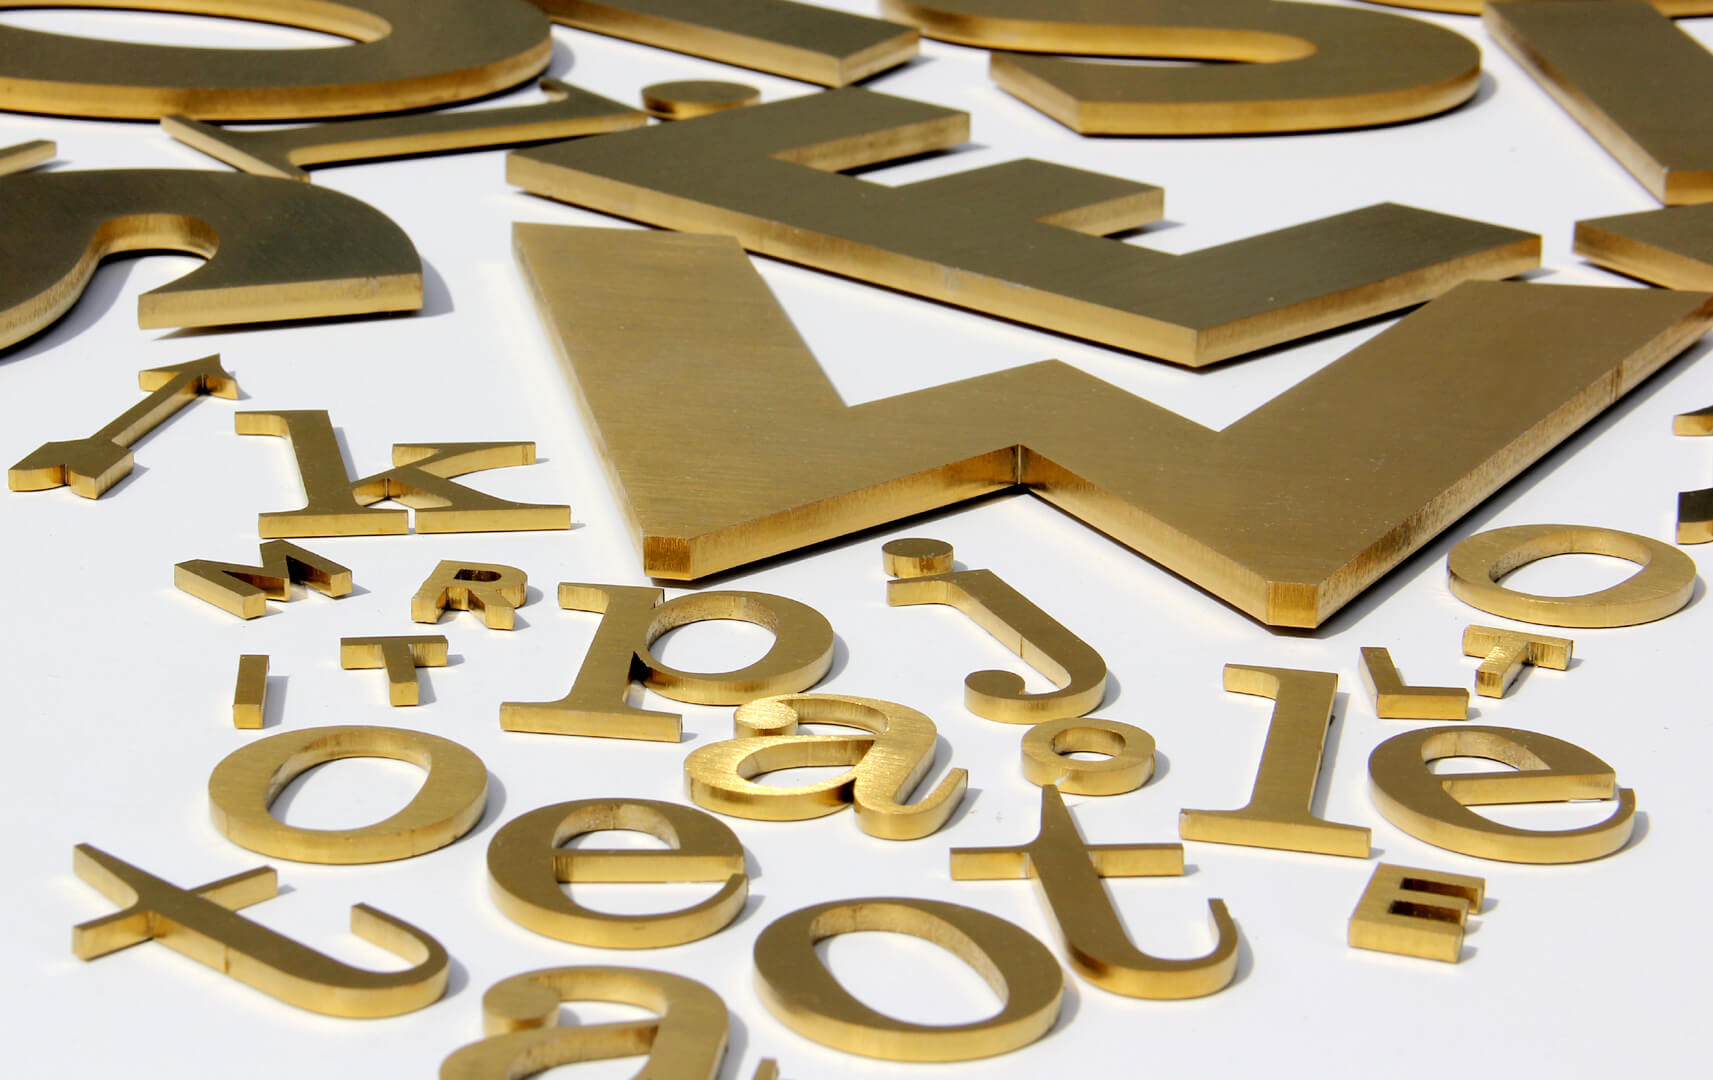 Litera S złota - Metalowe litery w kolorze złotym, styl industrialny.